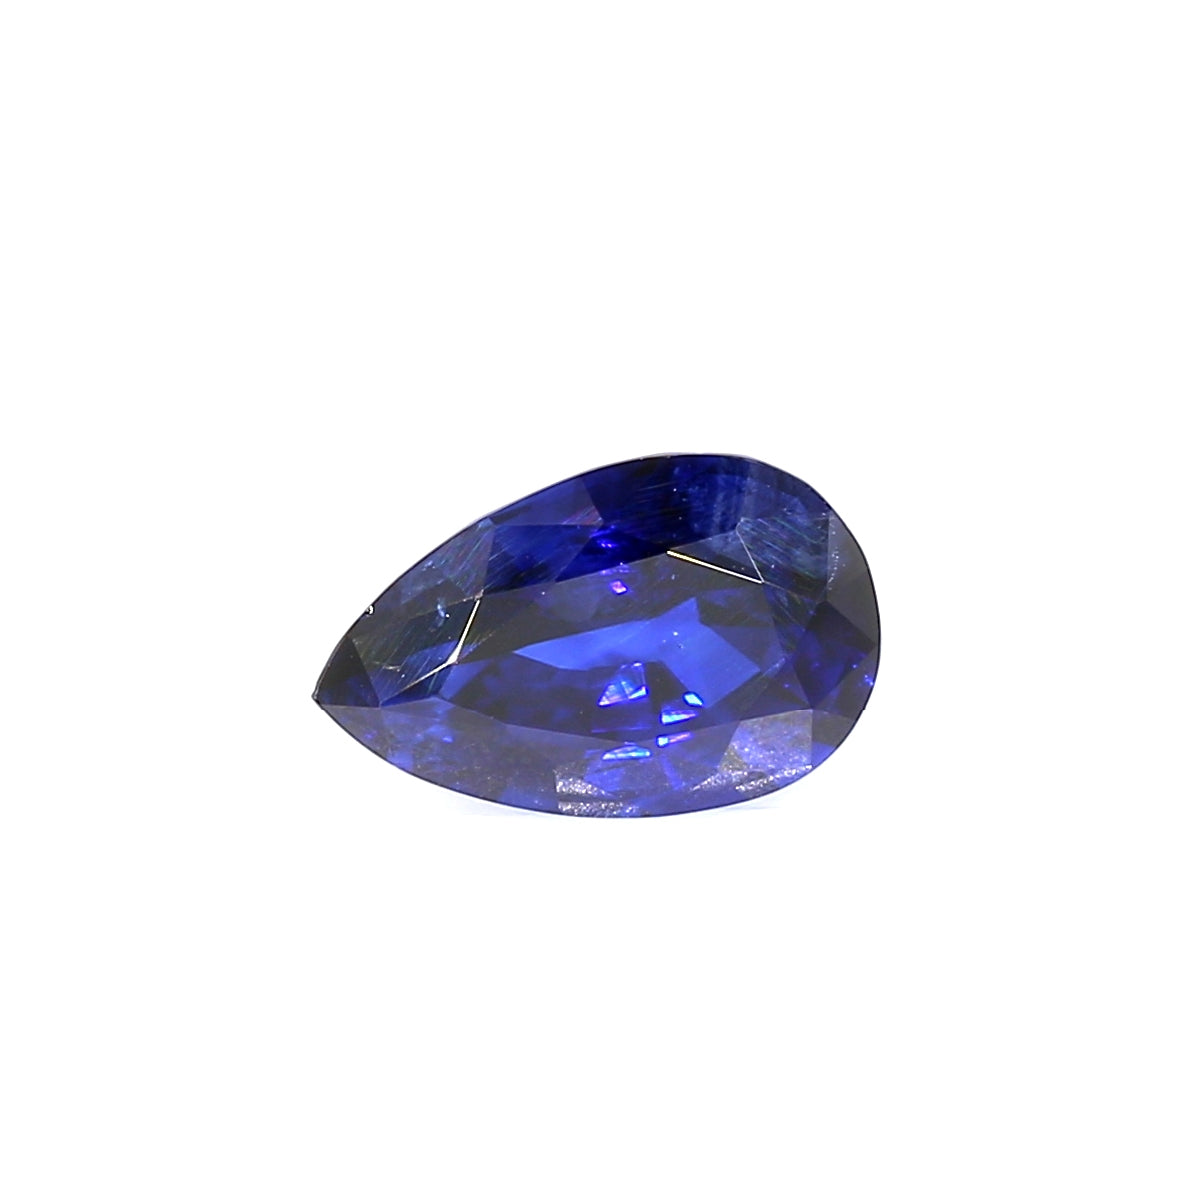 2.35ct Pear Shape Sapphire, Heated, Sri Lanka - 9.97 x 6.66 x 4.73mm